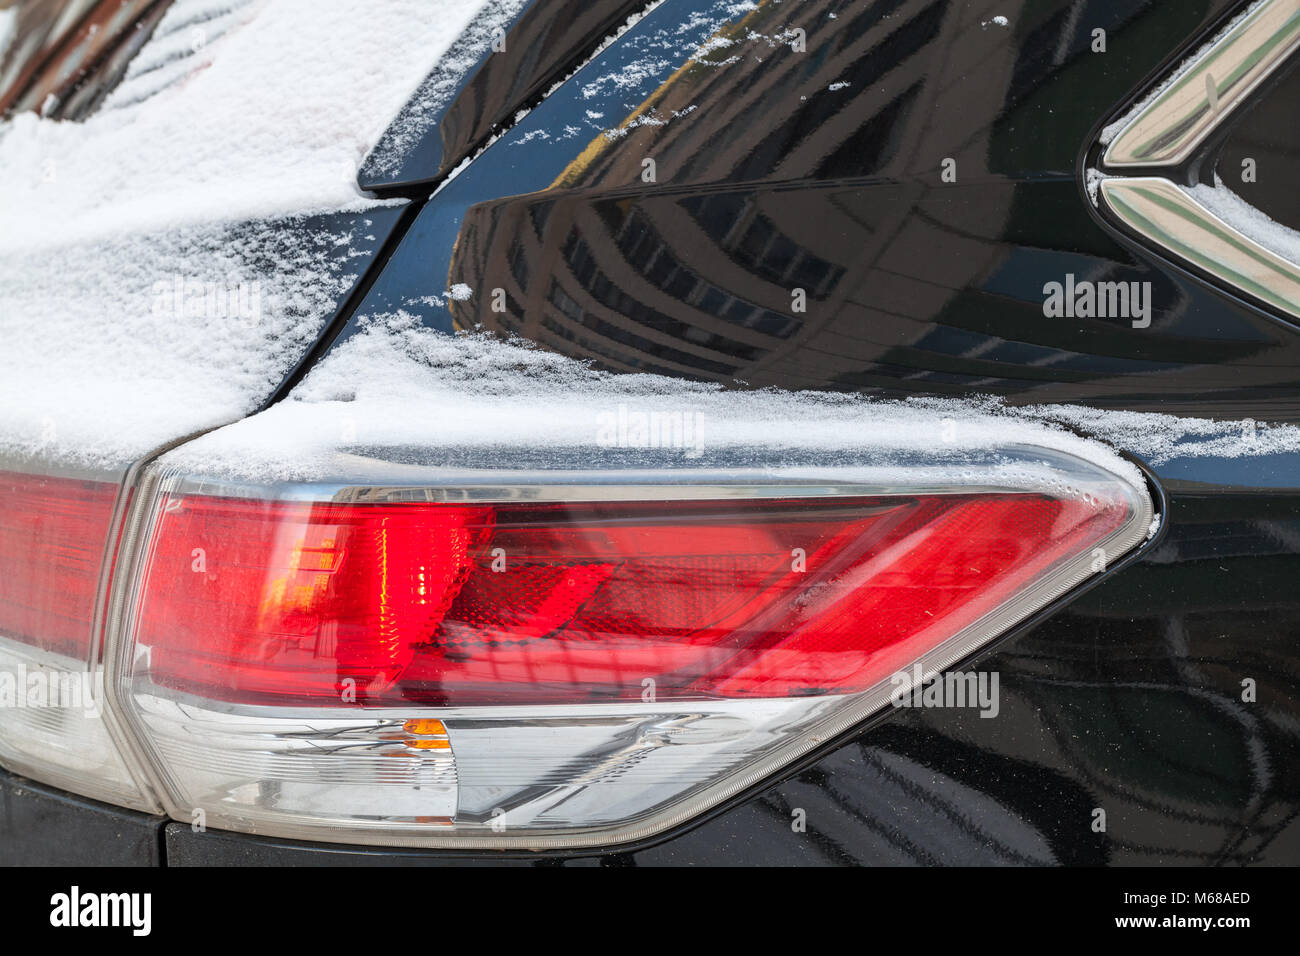 Les feux de stop arrière voiture SUV couverte de neige, saison d'hiver Banque D'Images